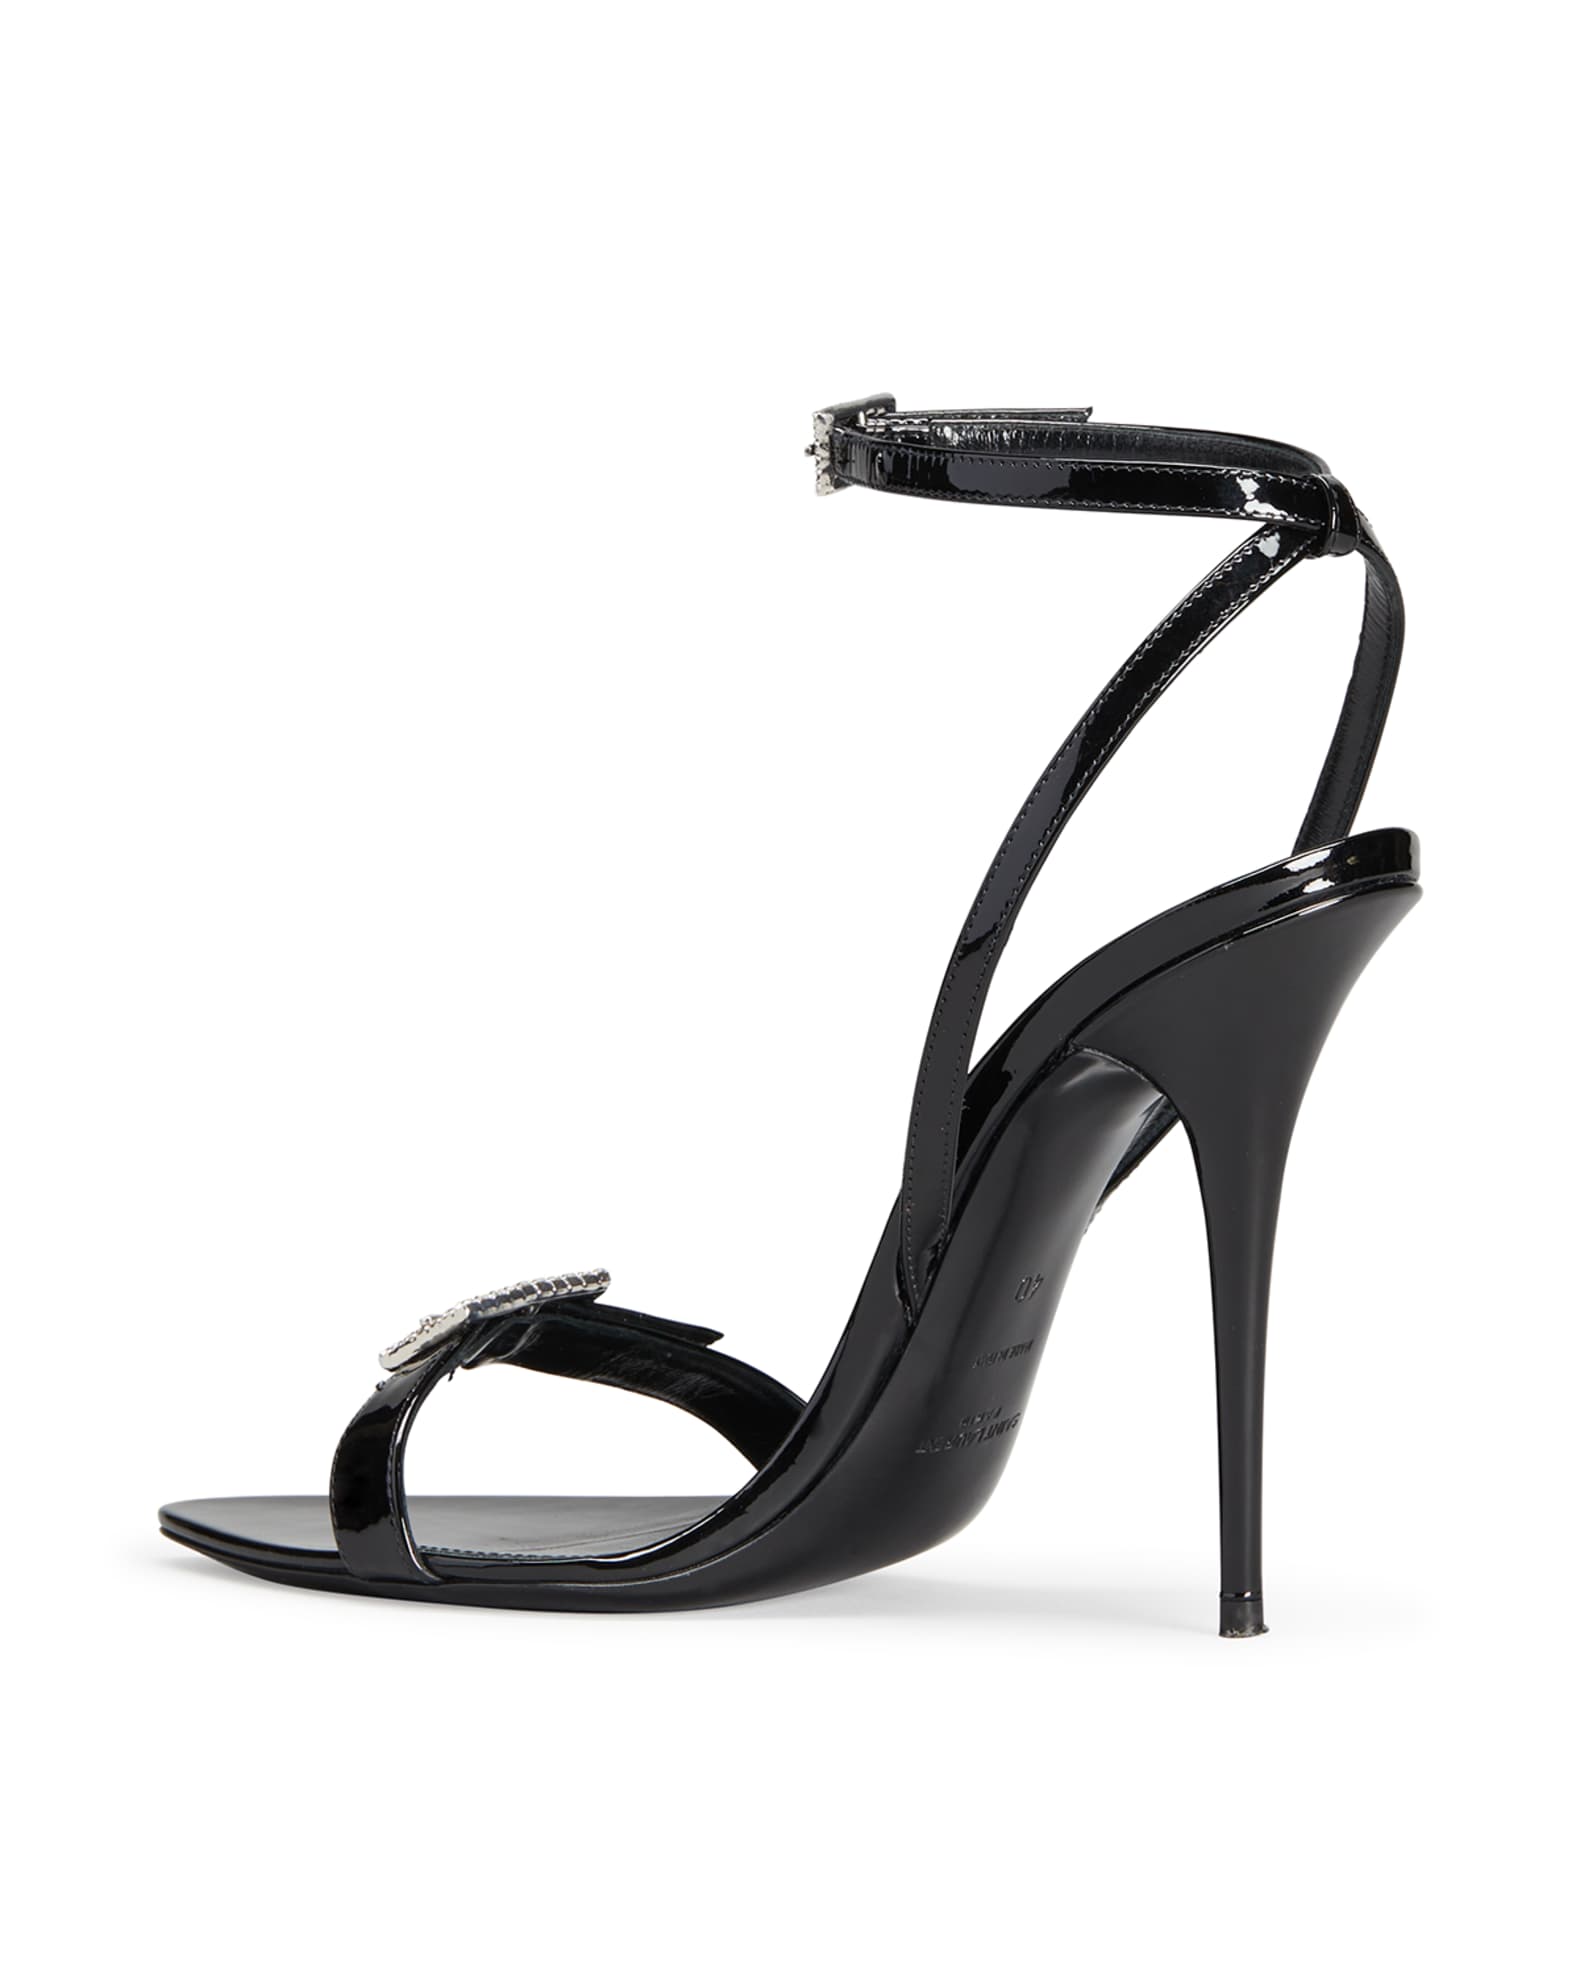 Saint Laurent Patent Crystal-Strap Stiletto Sandals | Neiman Marcus